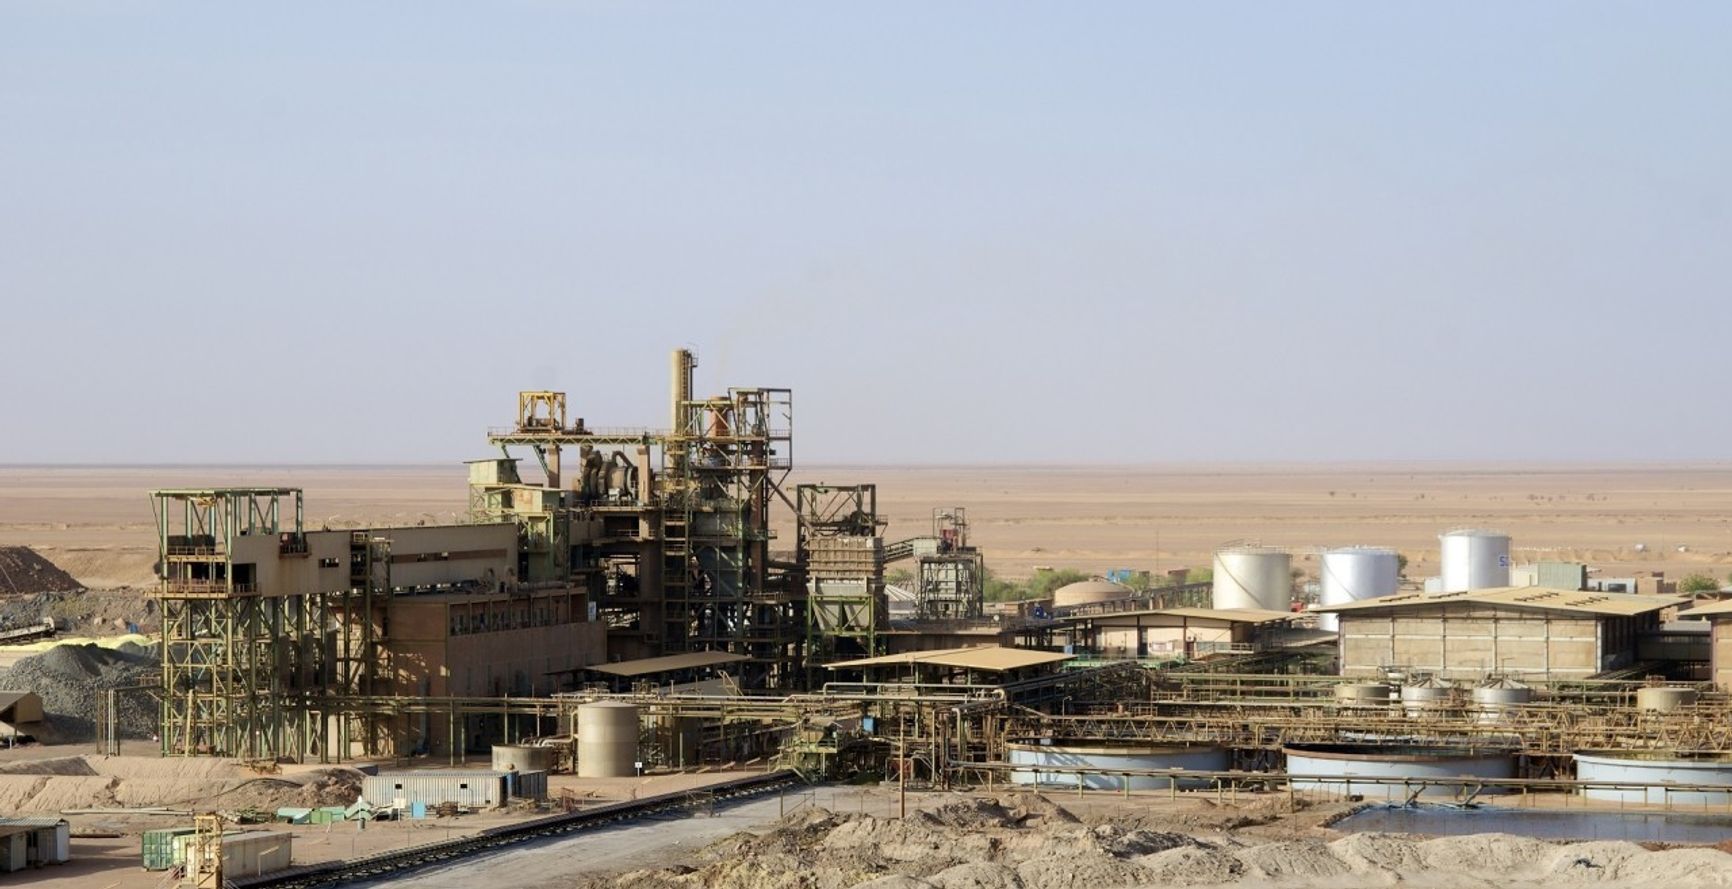 Рудник Somair возле города Орлит (Нигер) разрабатывала французская компания Orano. В августе часть сотрудников были эвакуированы по соображениям безопасности